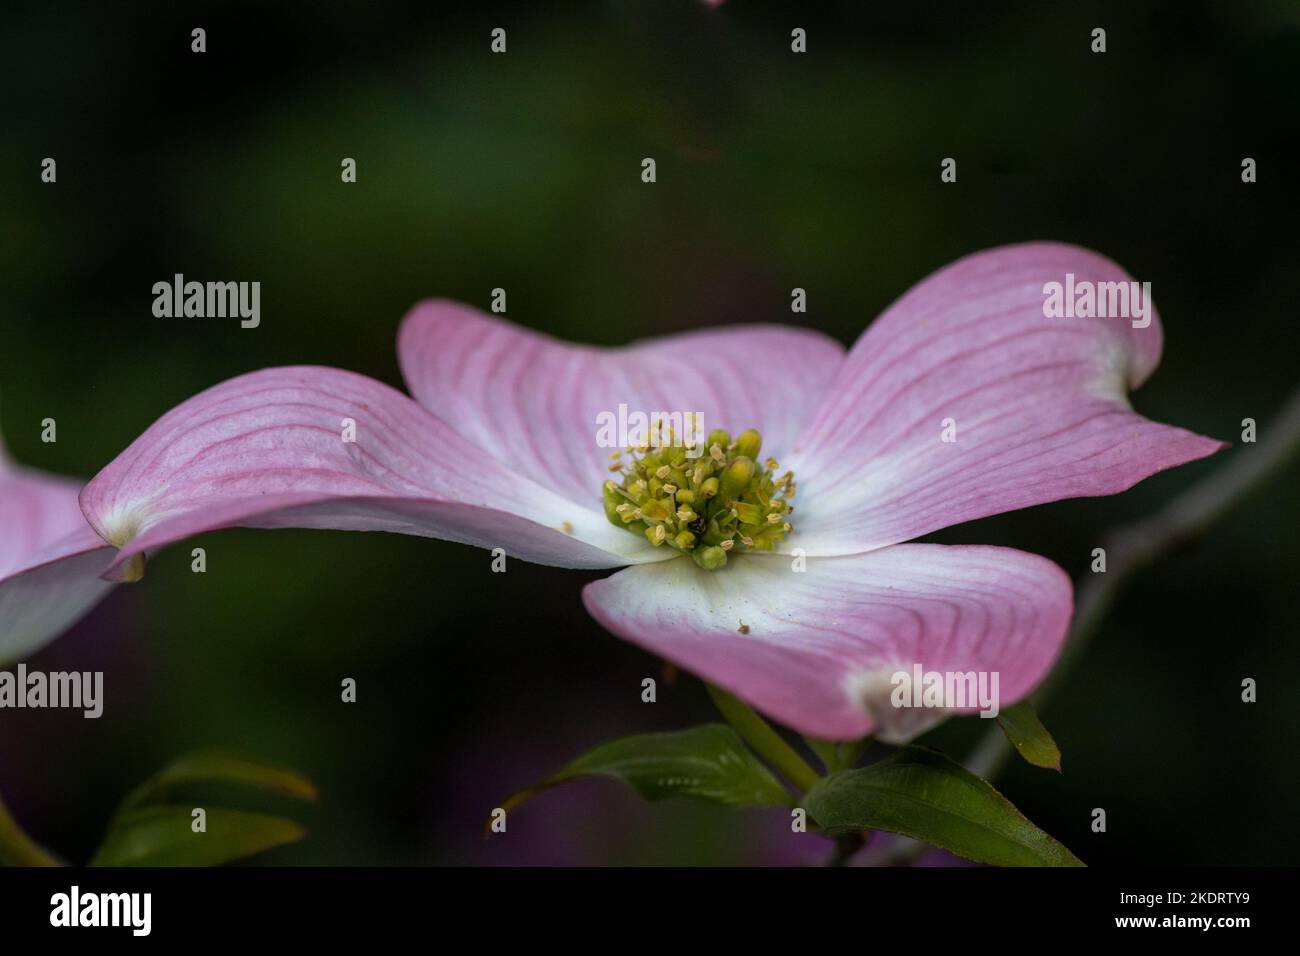 Primo piano su fiore di dogwood rosa su sfondo verde copia-spazio, visto dal lato, evidenziando il centro giallo e verde - Cornus sp Foto Stock